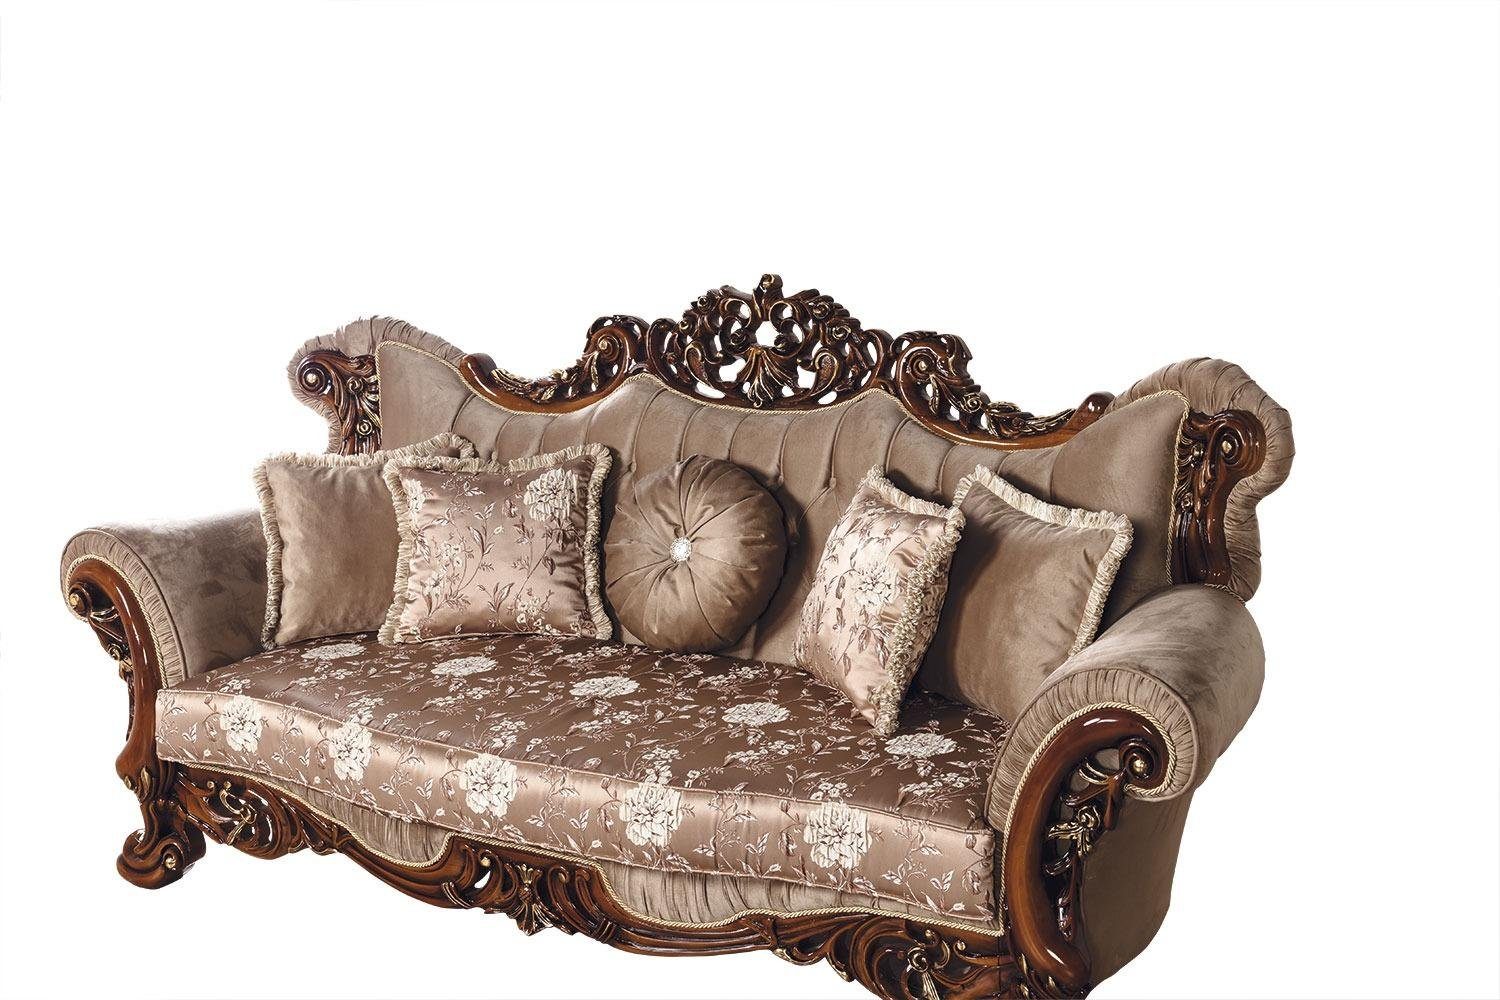 Chesterfield Dreisitzer Möbel Sofa JVmoebel Sofa, Luxus Couch Klassischer Barock